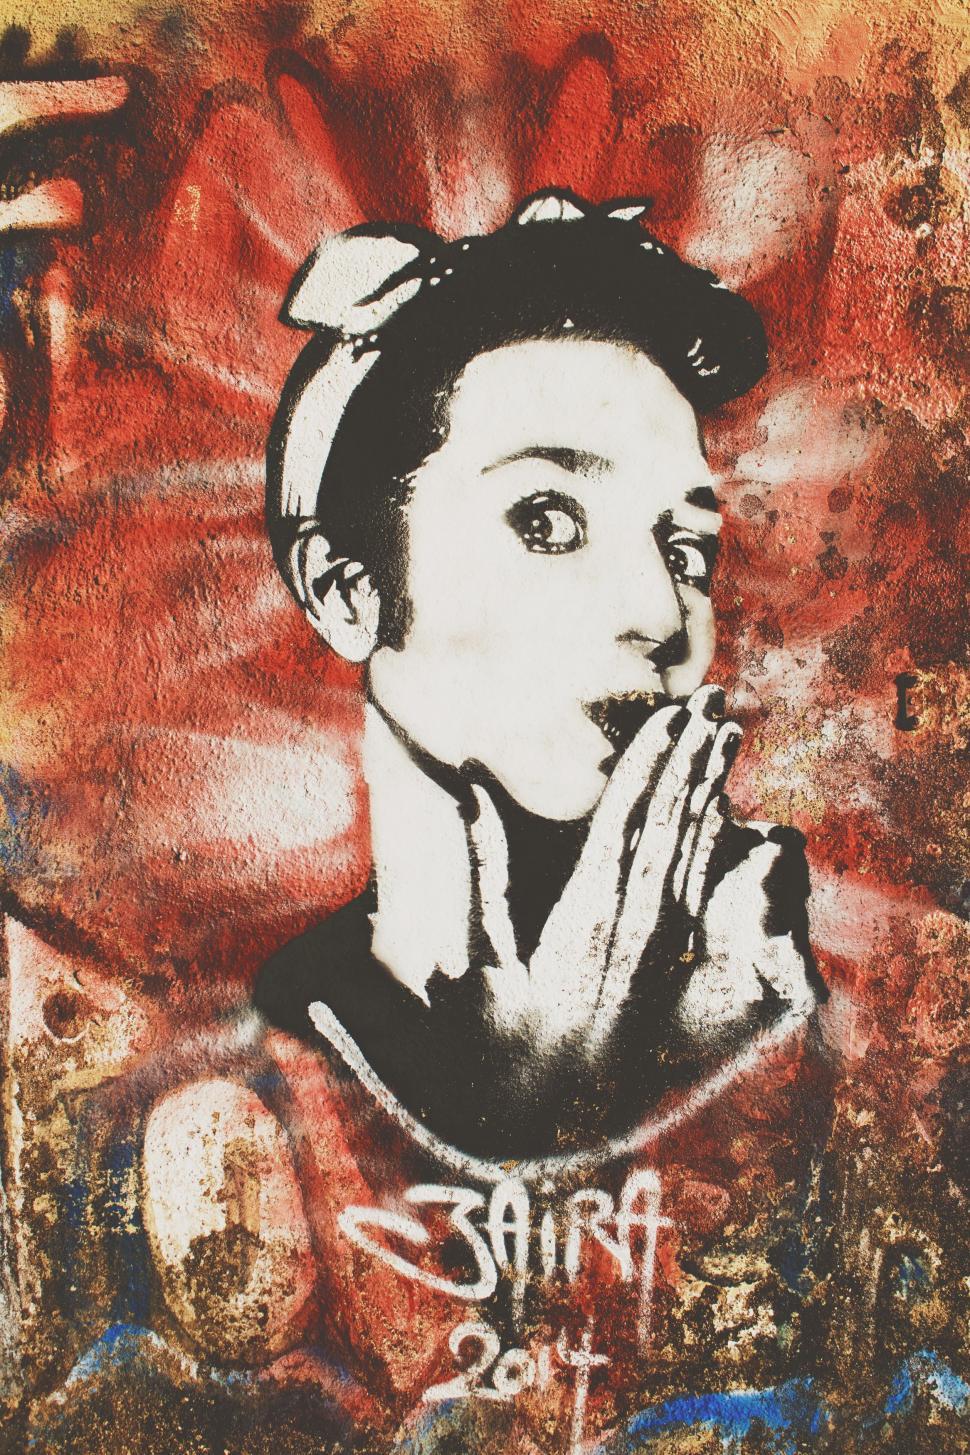 Free Image of Woman Graffiti 